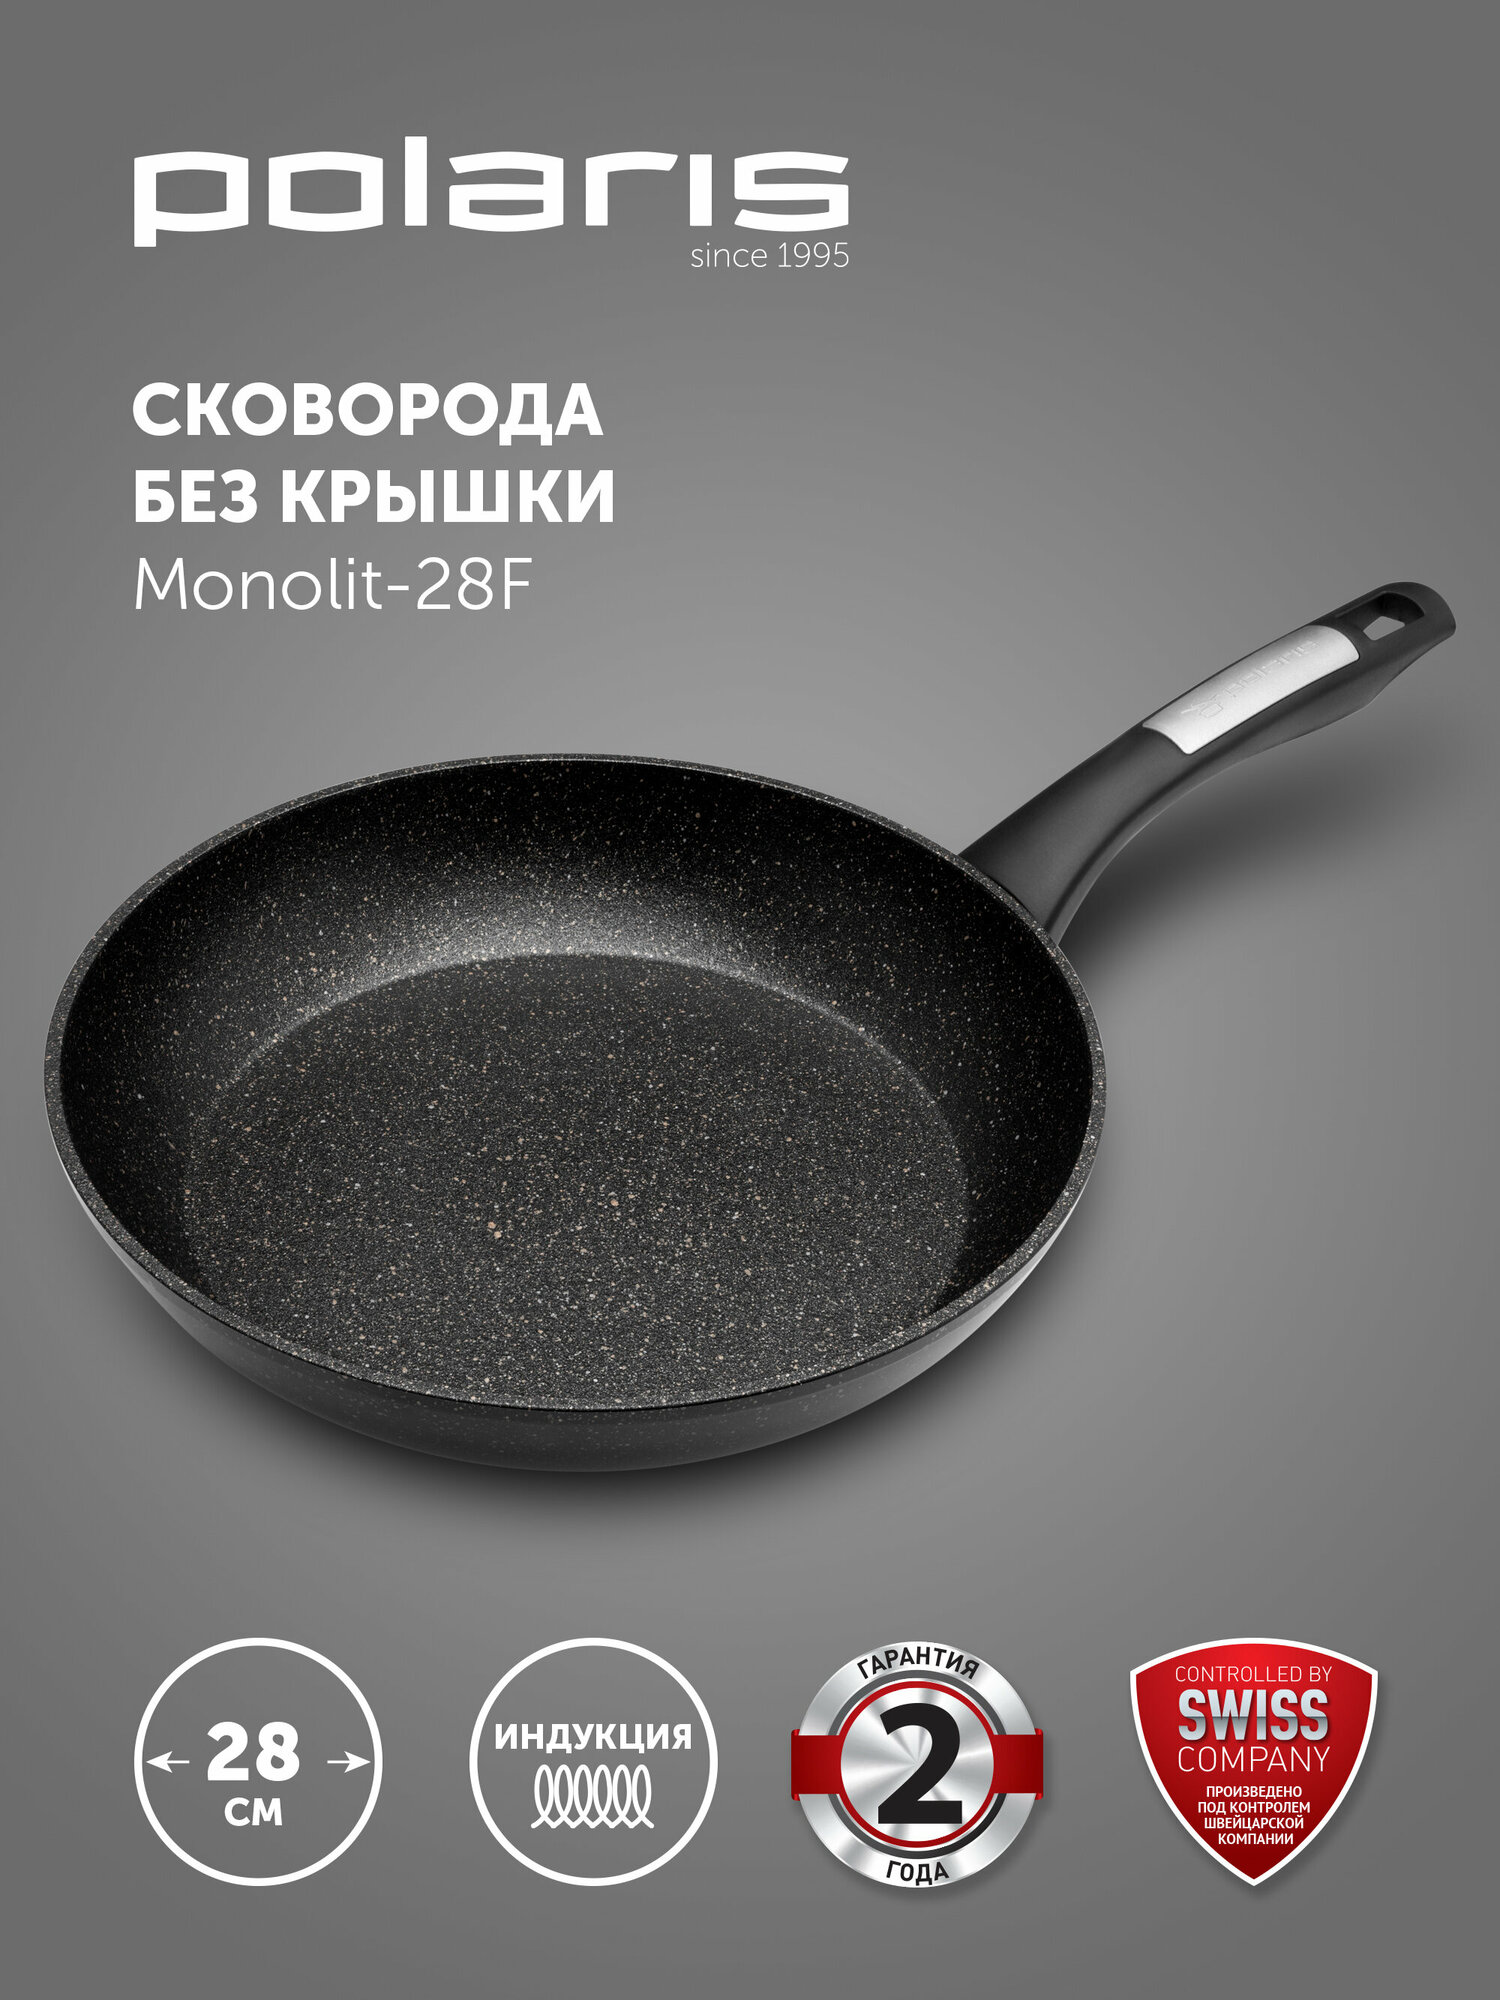 Сковорода Monolit-28F ков. ал, 28 см (POLARIS)